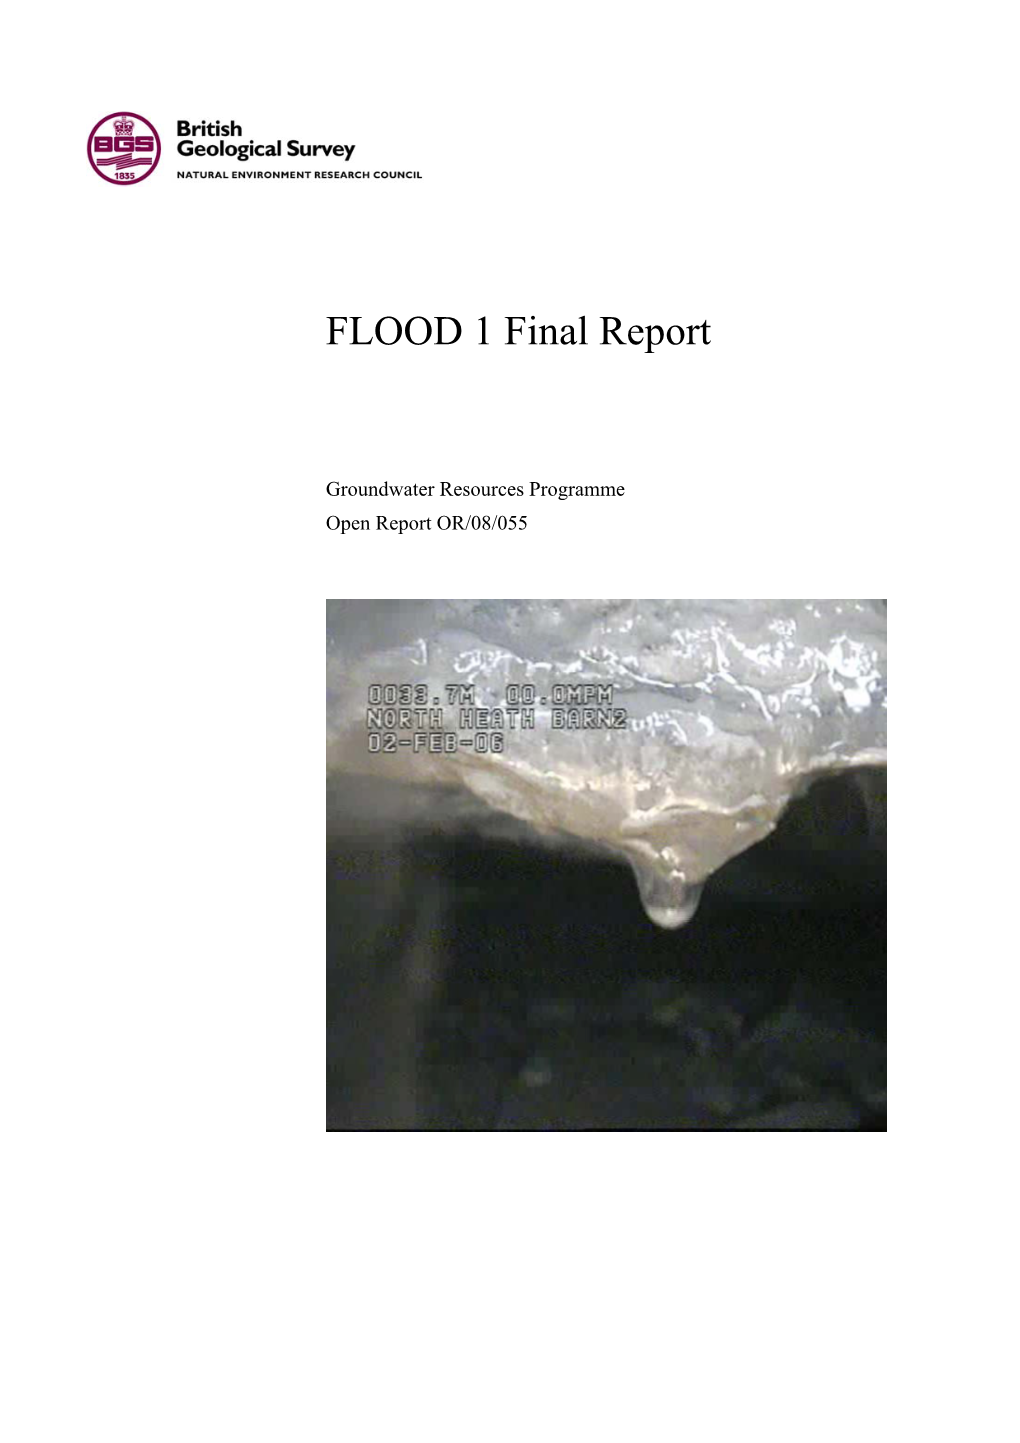 FLOOD 1 Final Report